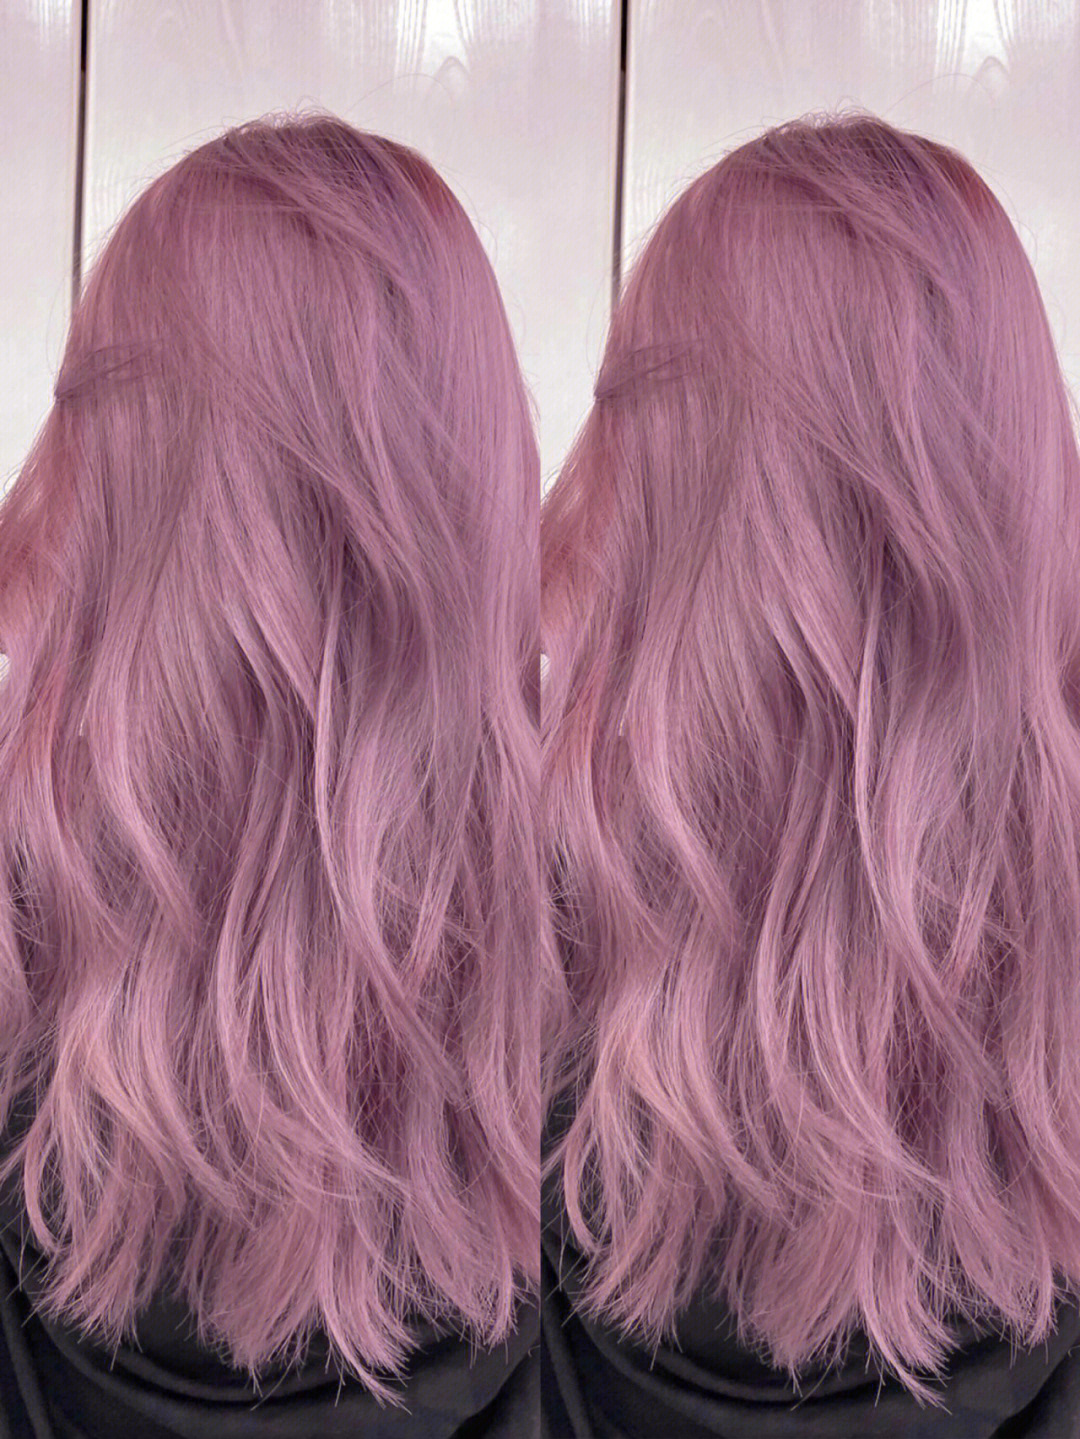 发色分享西柚粉紫色